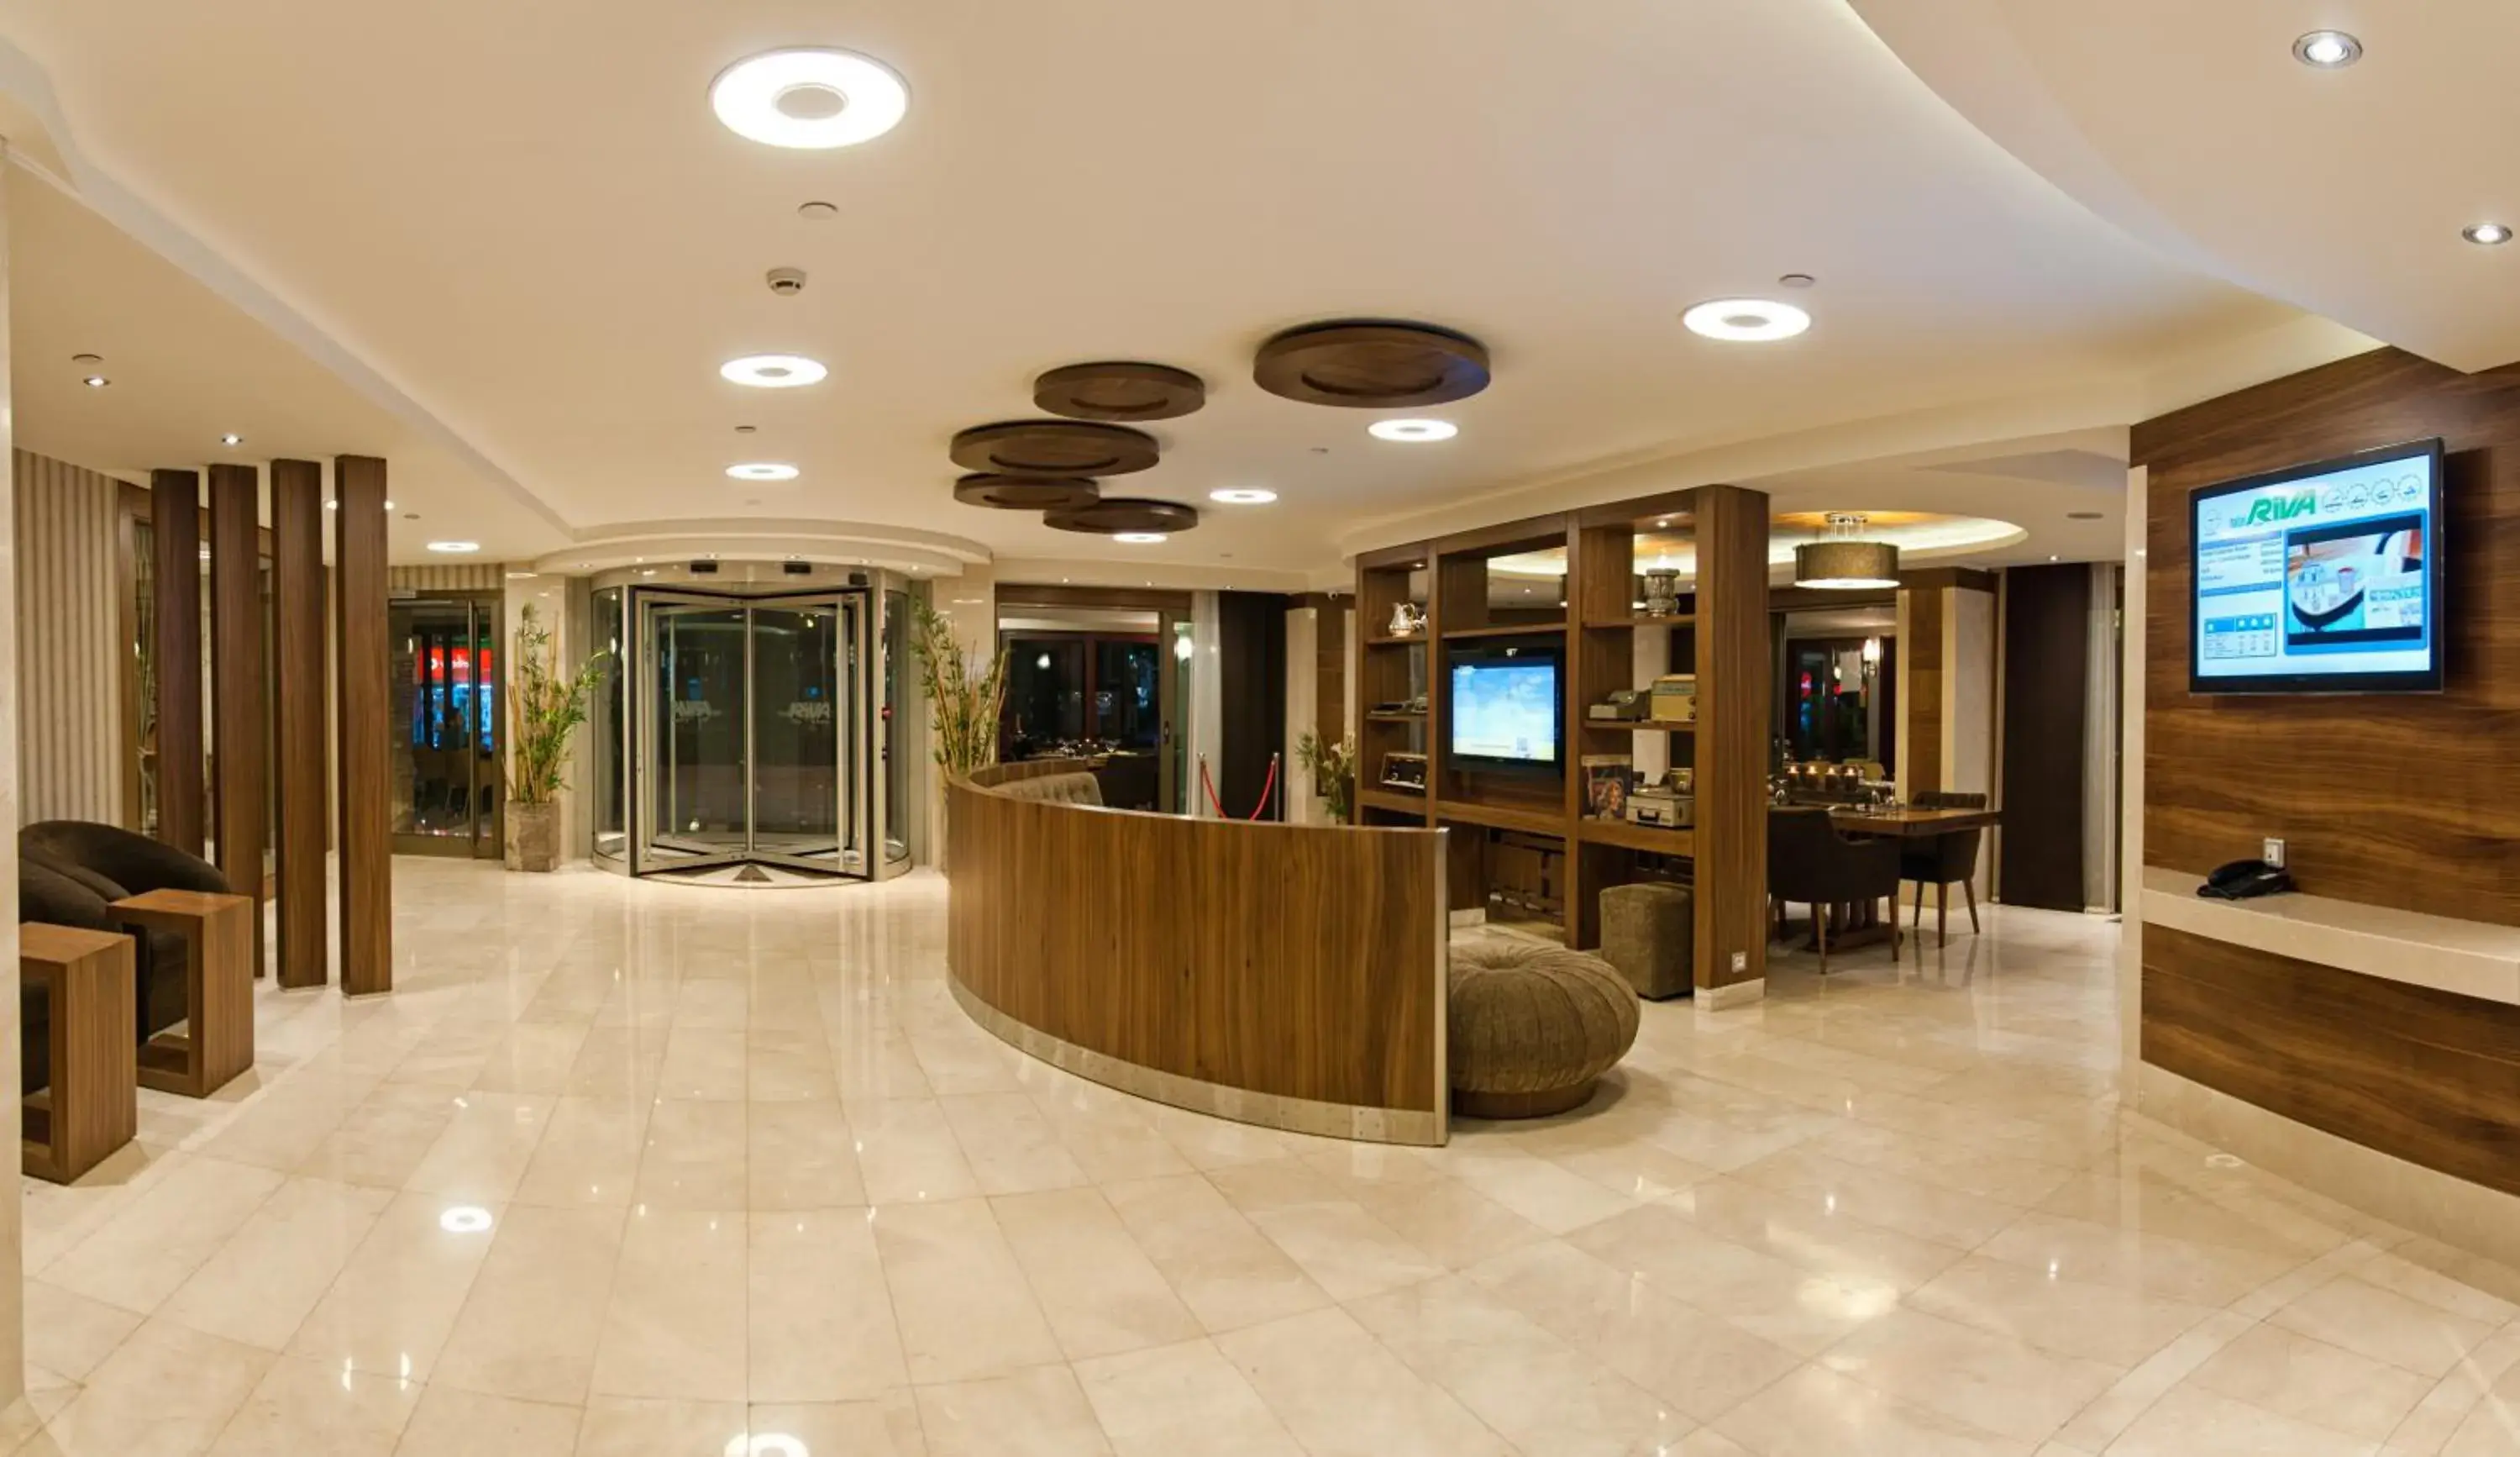 Lobby or reception, Lobby/Reception in Riva Hotel Taksim